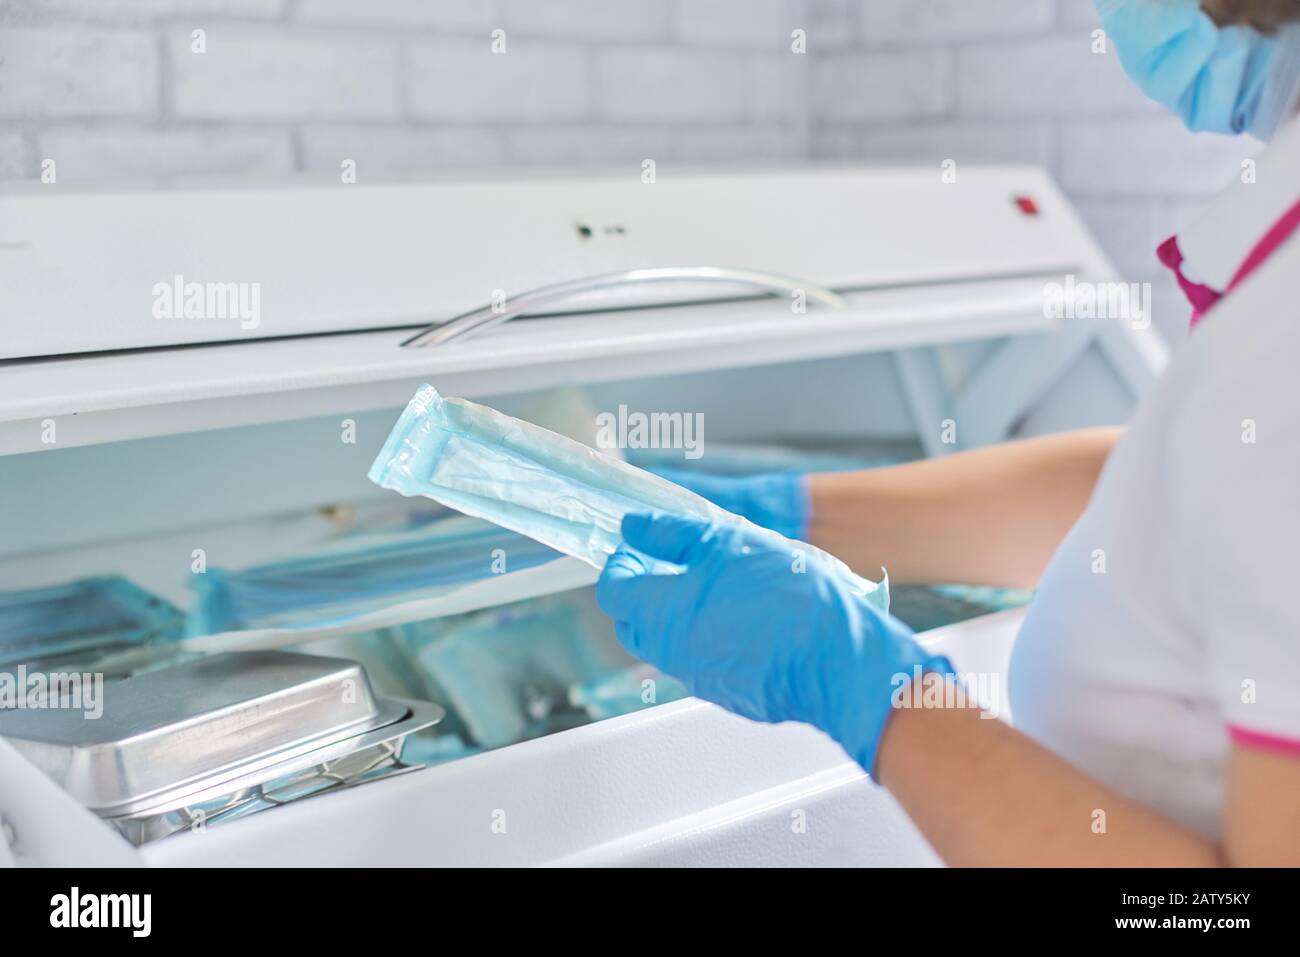 Infermiere femmina che esegue la sterilizzazione di strumenti medici dentali in autoclave. Reparto di sterilizzazione presso la clinica odontoiatrica Foto Stock